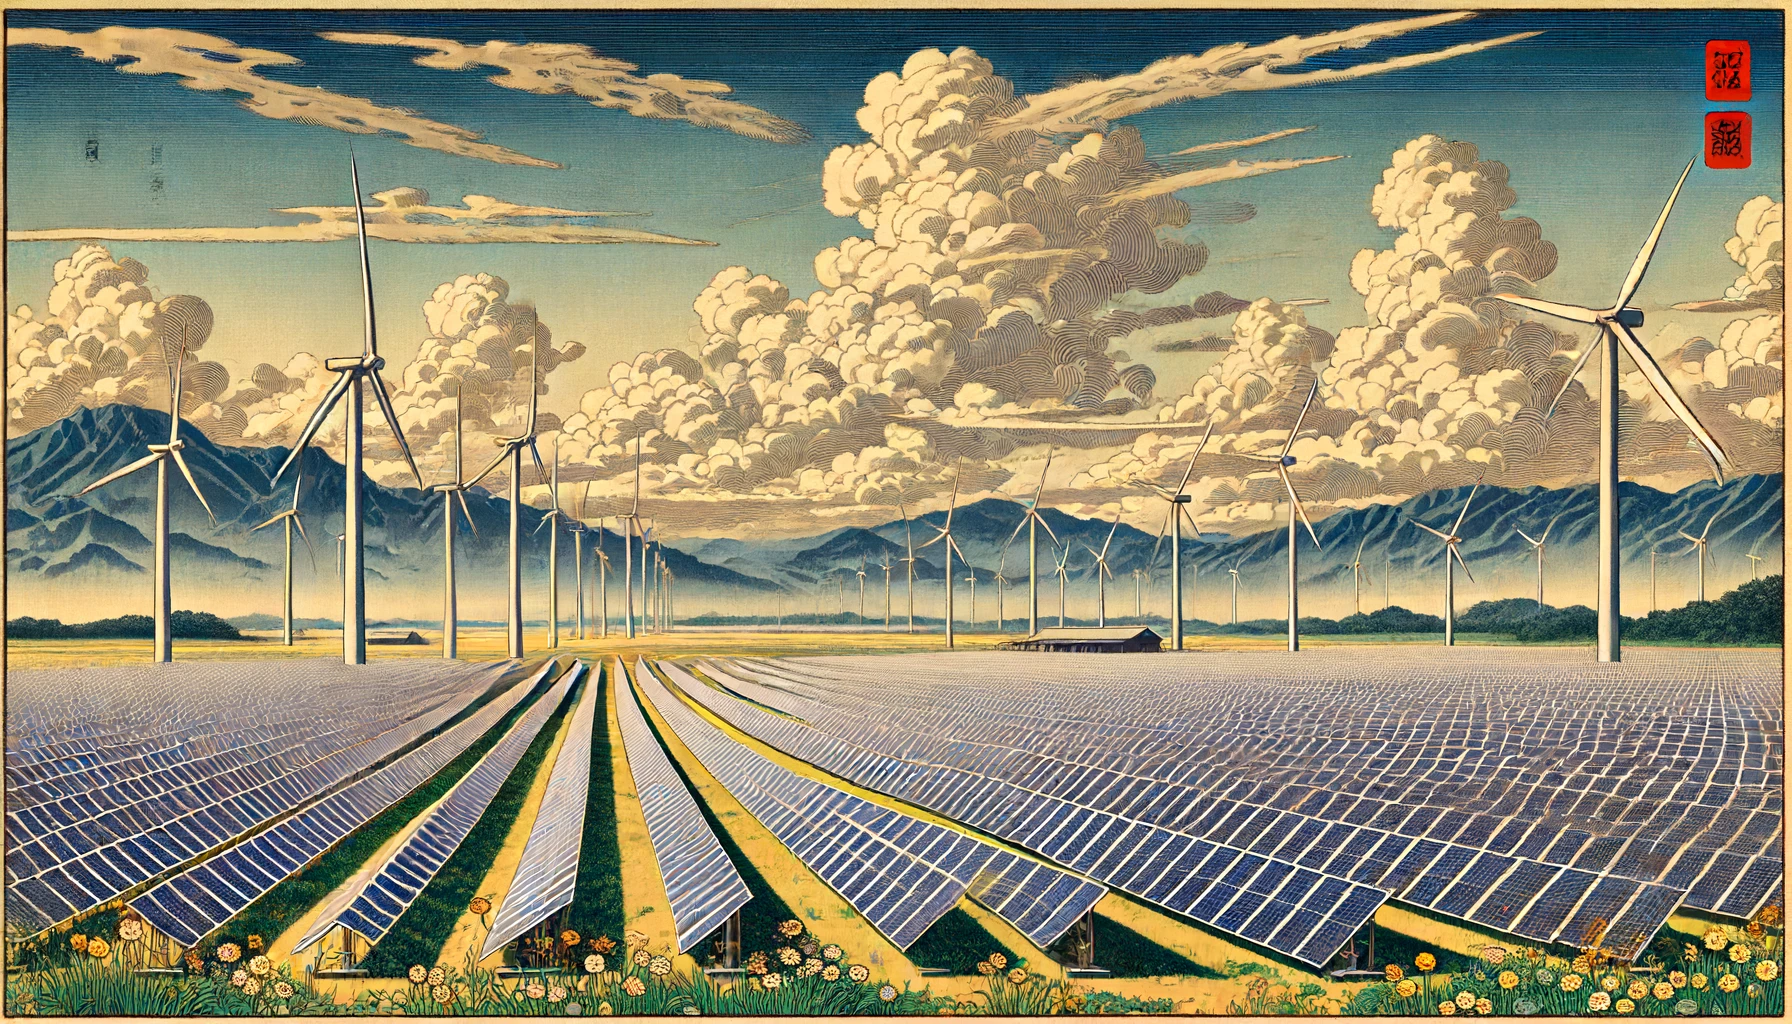 A painting of a solar farm